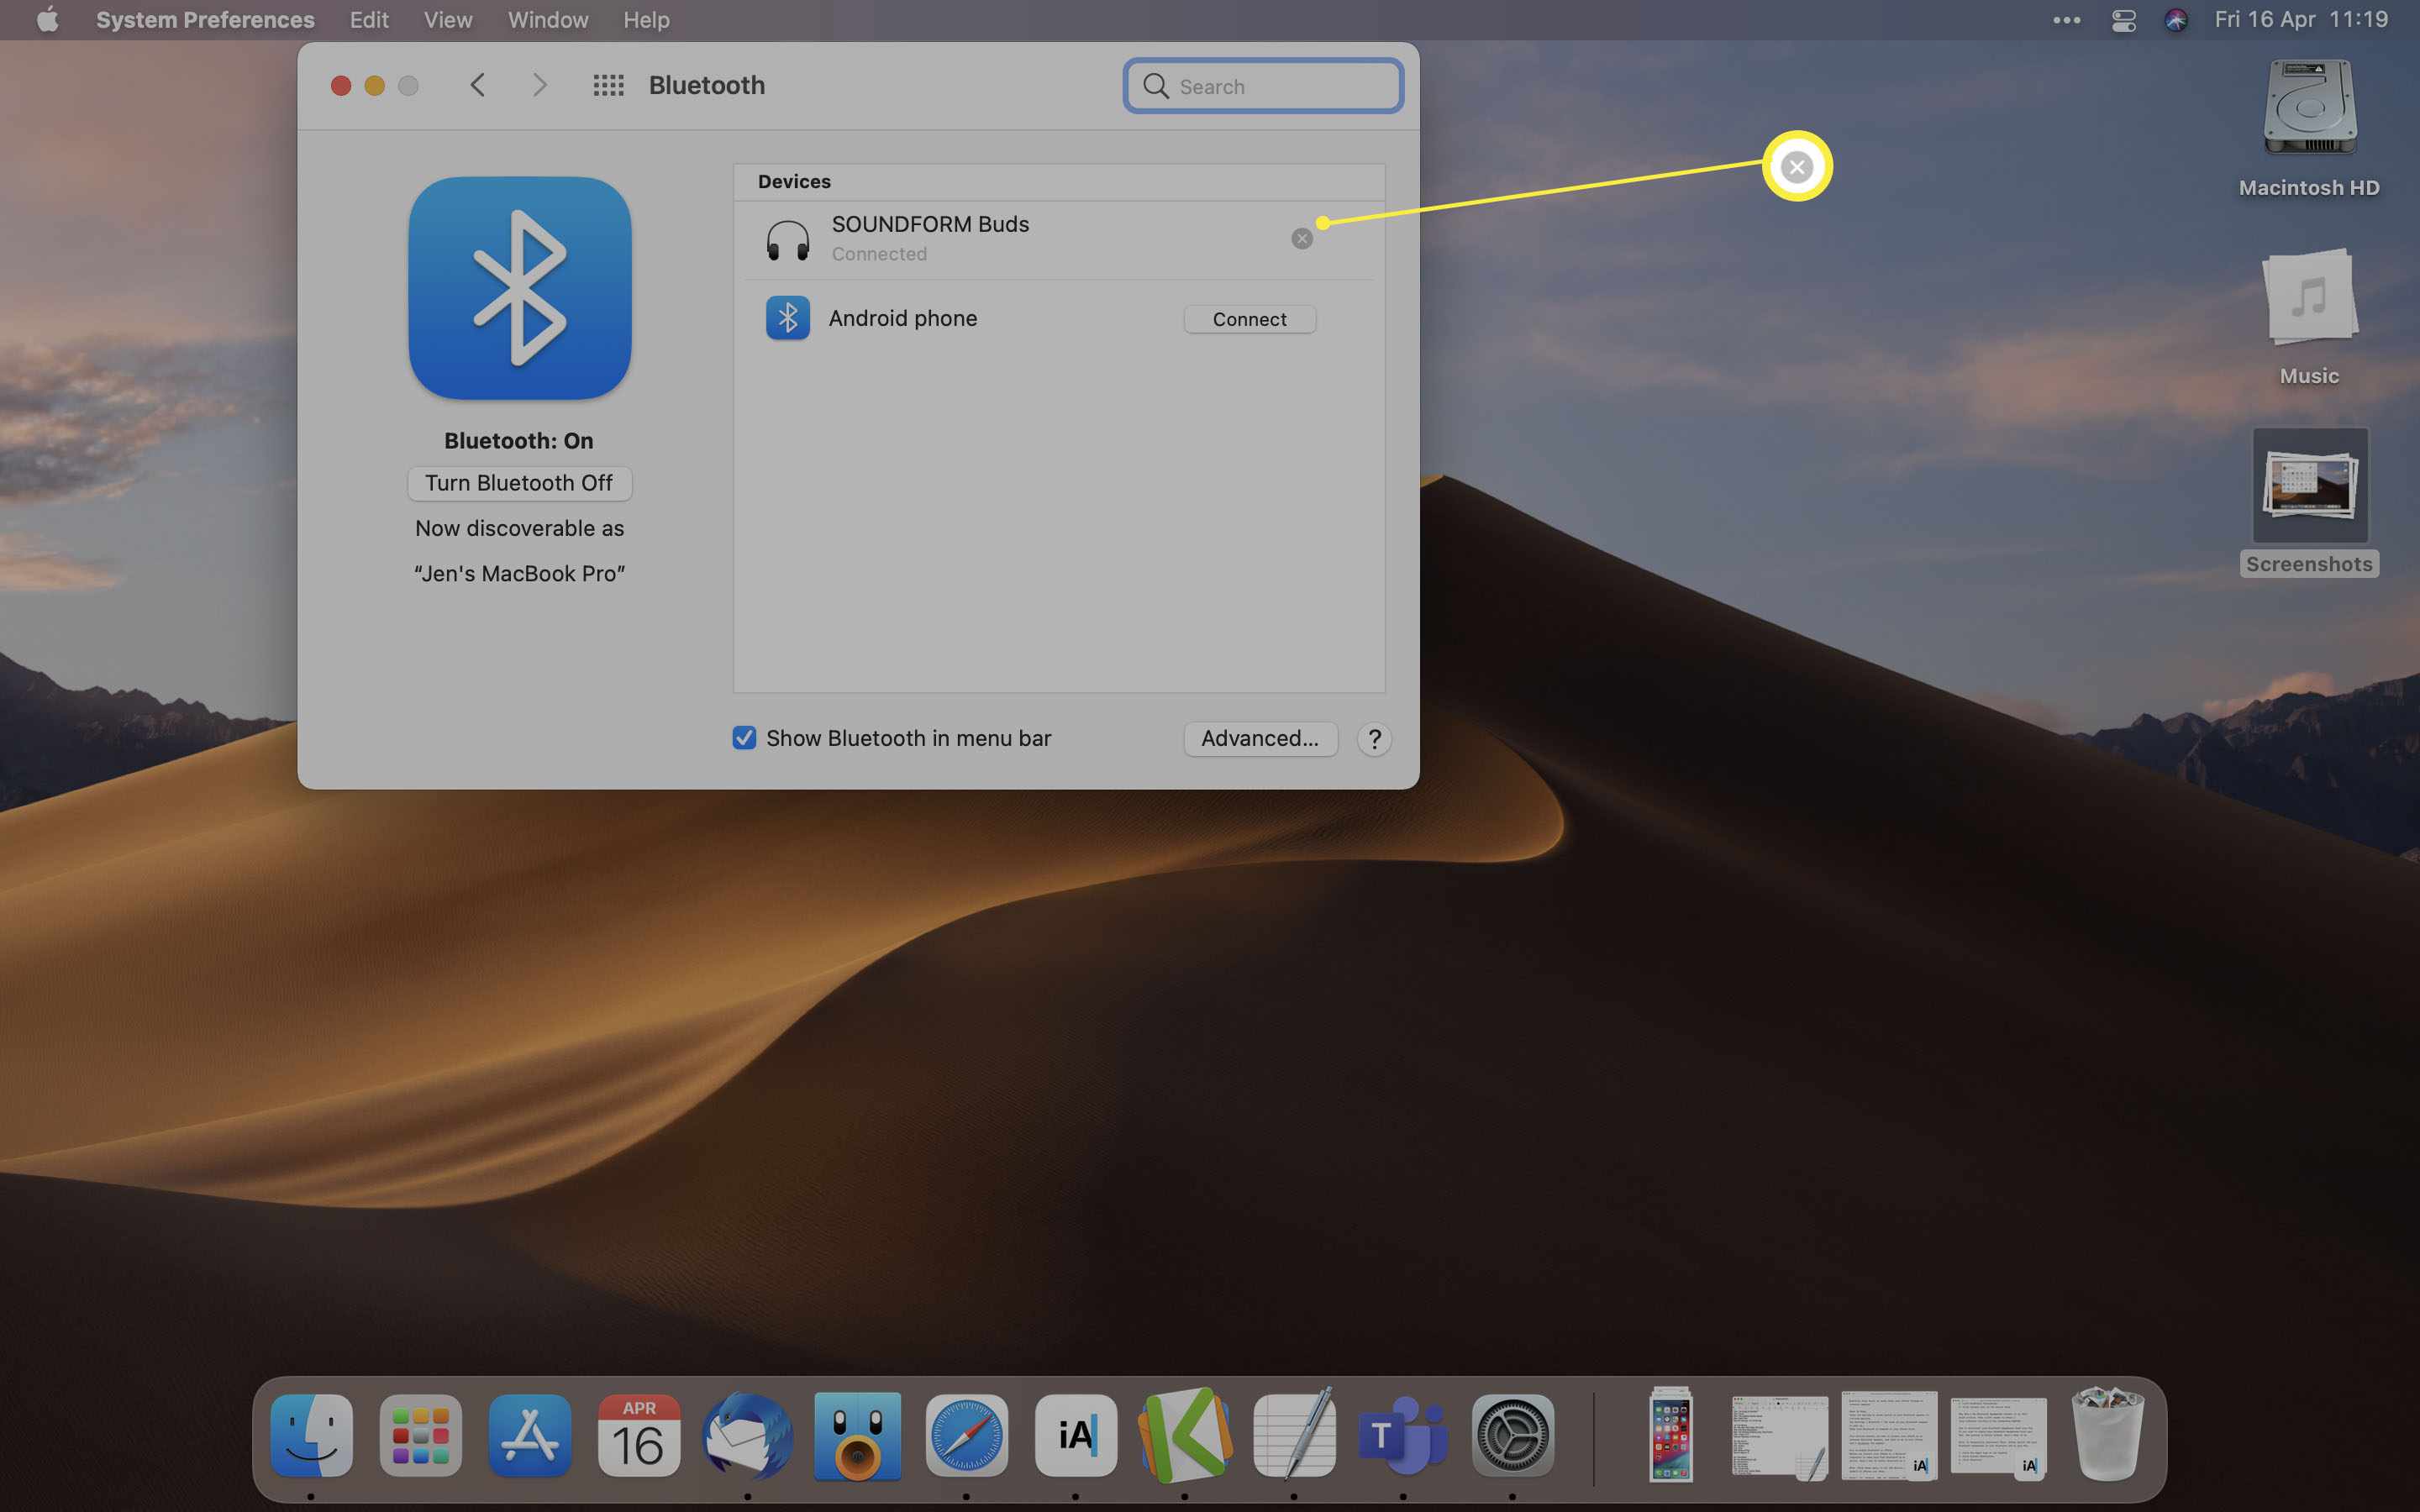 MacOS Bluetooth-alternativ med kopplingen x markerad bredvid en Bluetooth-högtalare